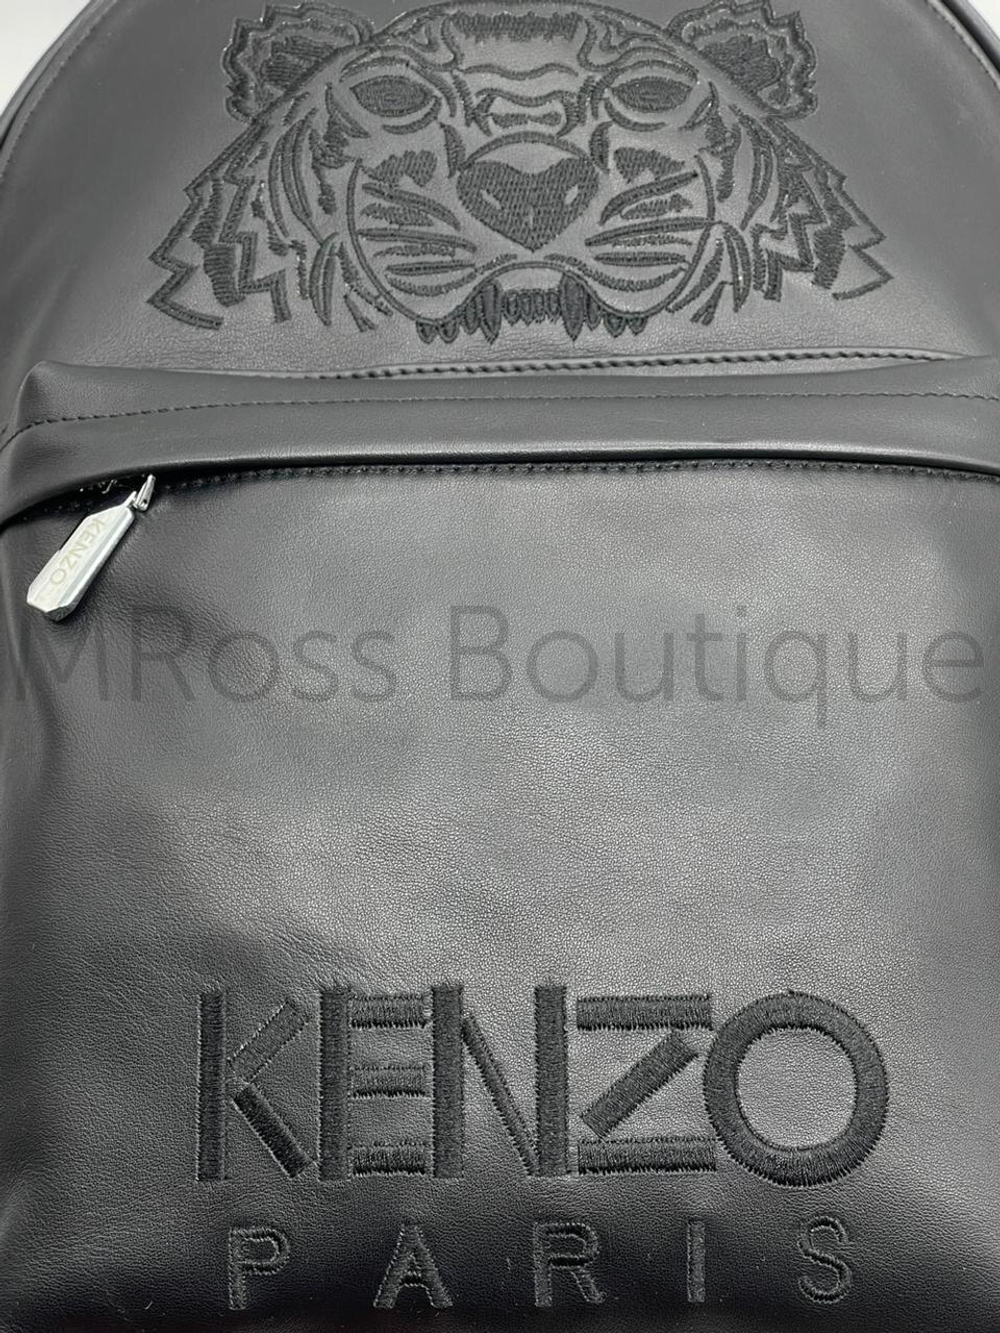 Кожаный рюкзак Kenzo